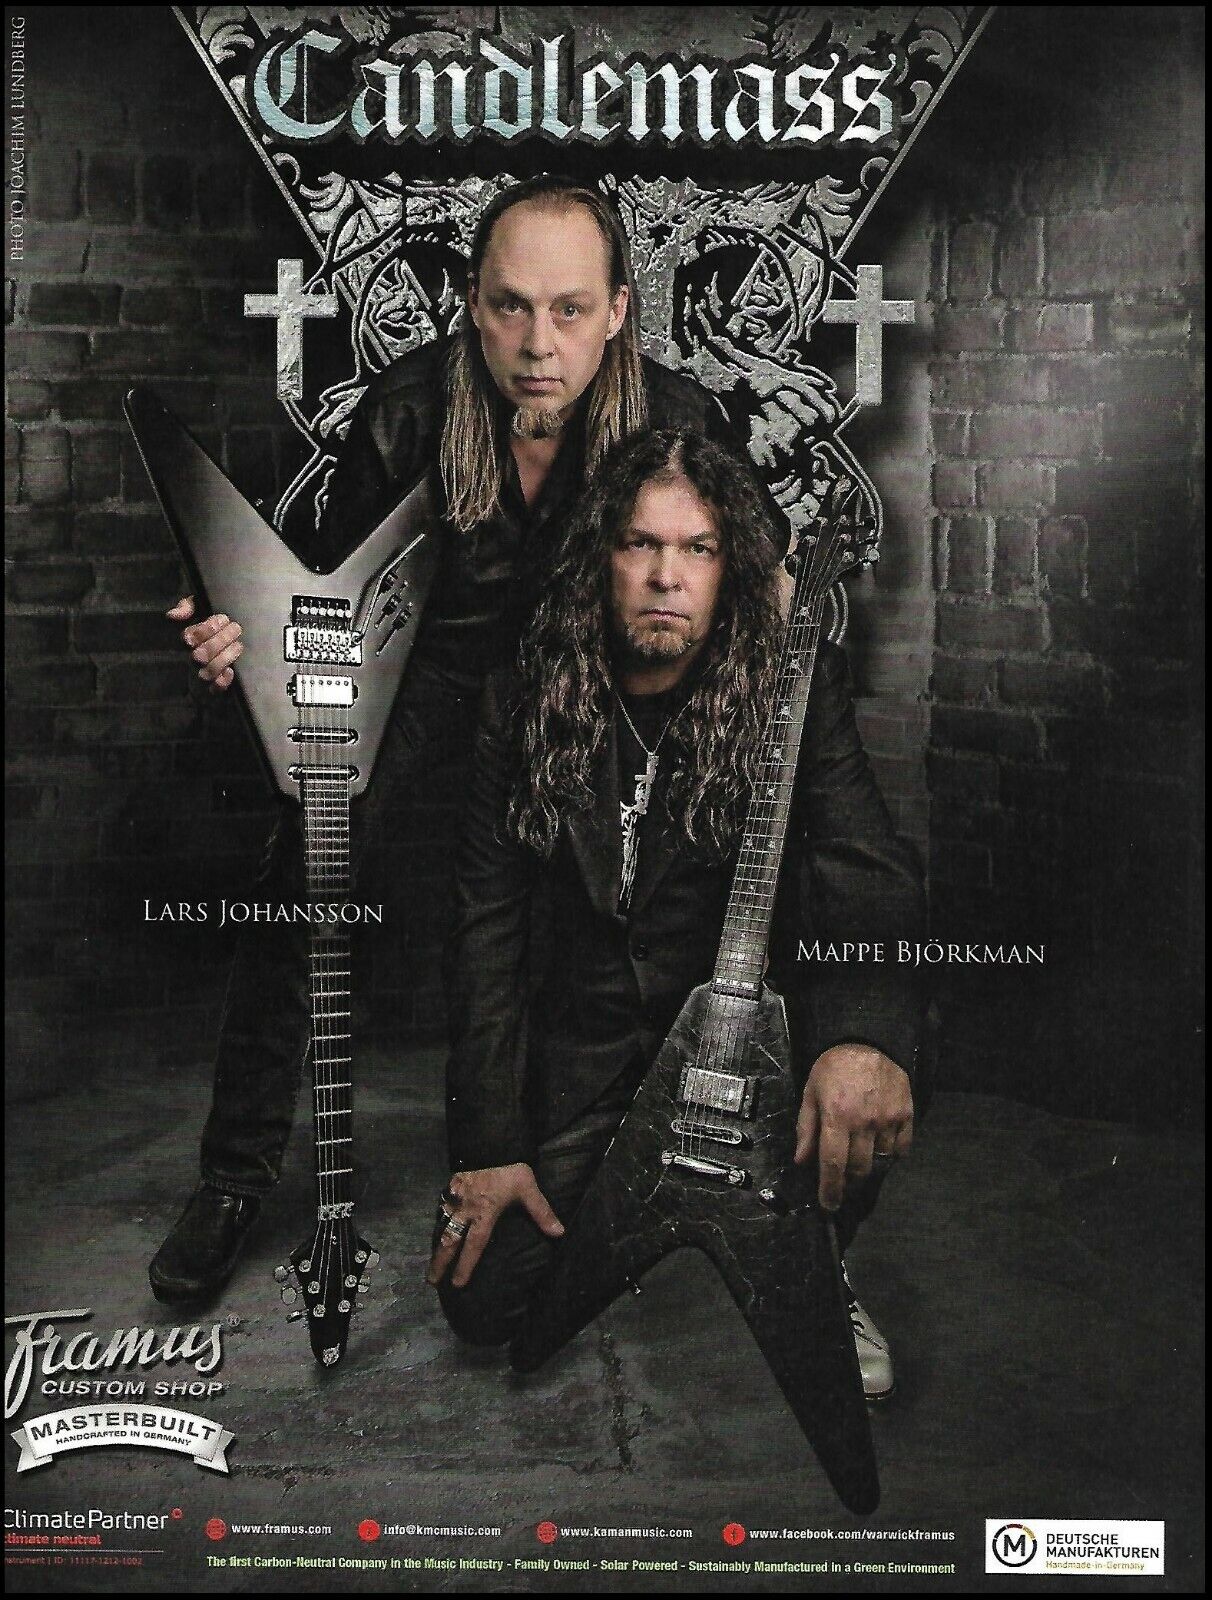 Candlemass Lars Johansson Mats Bjorkman Framus Guitar advertisement ad print